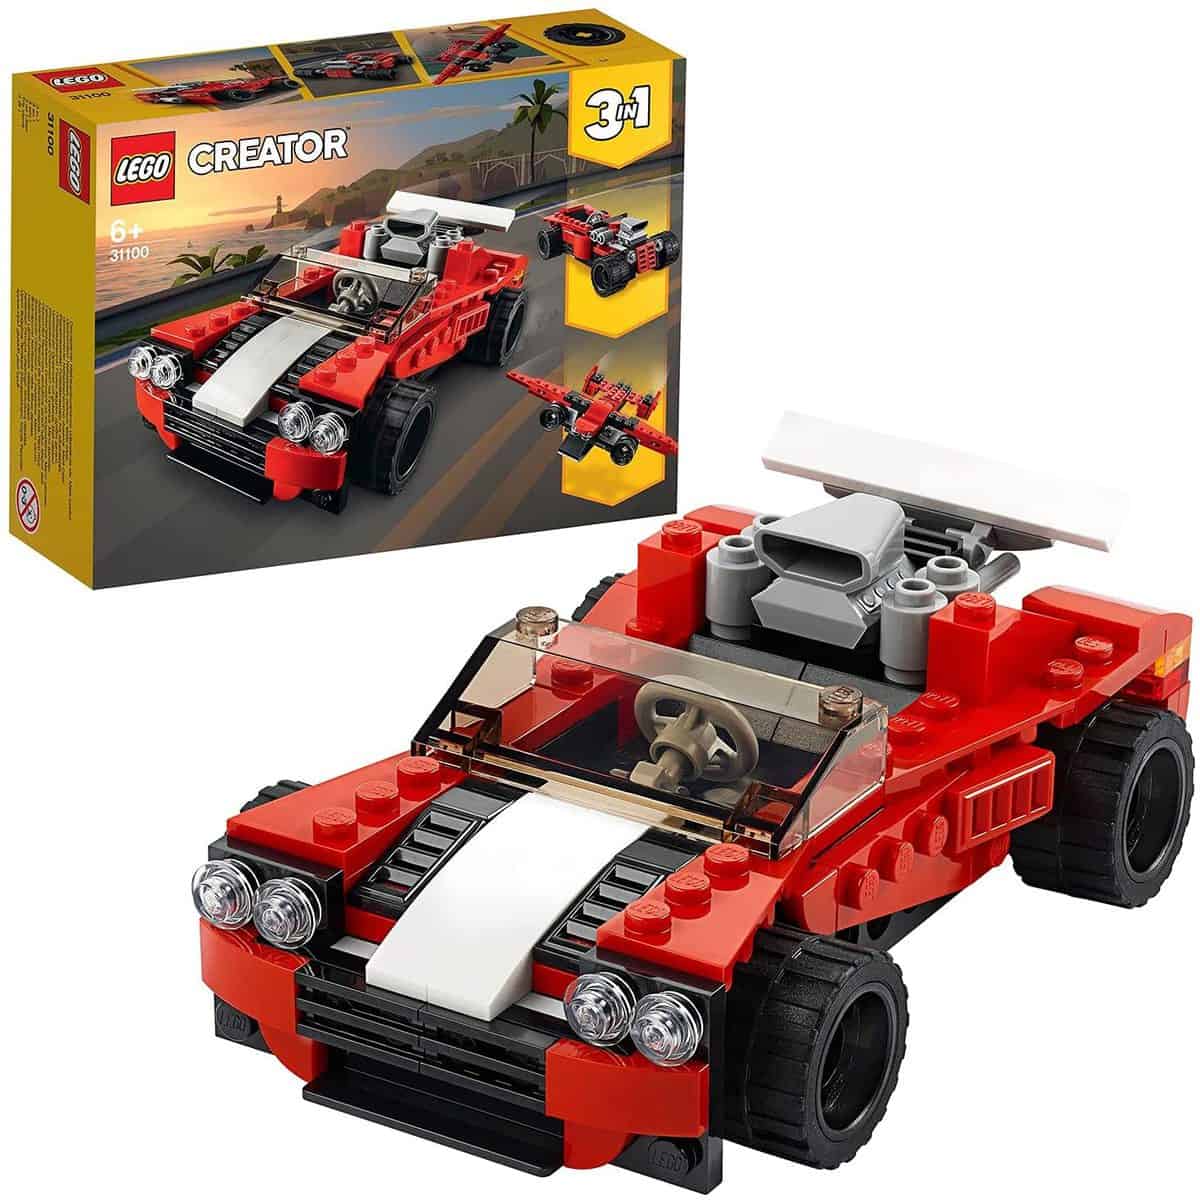 LEGO 31100 Creator 3-In-1 Sportwagen Spielzeug Set - für 6,73 € [Prime] statt 9,90 €